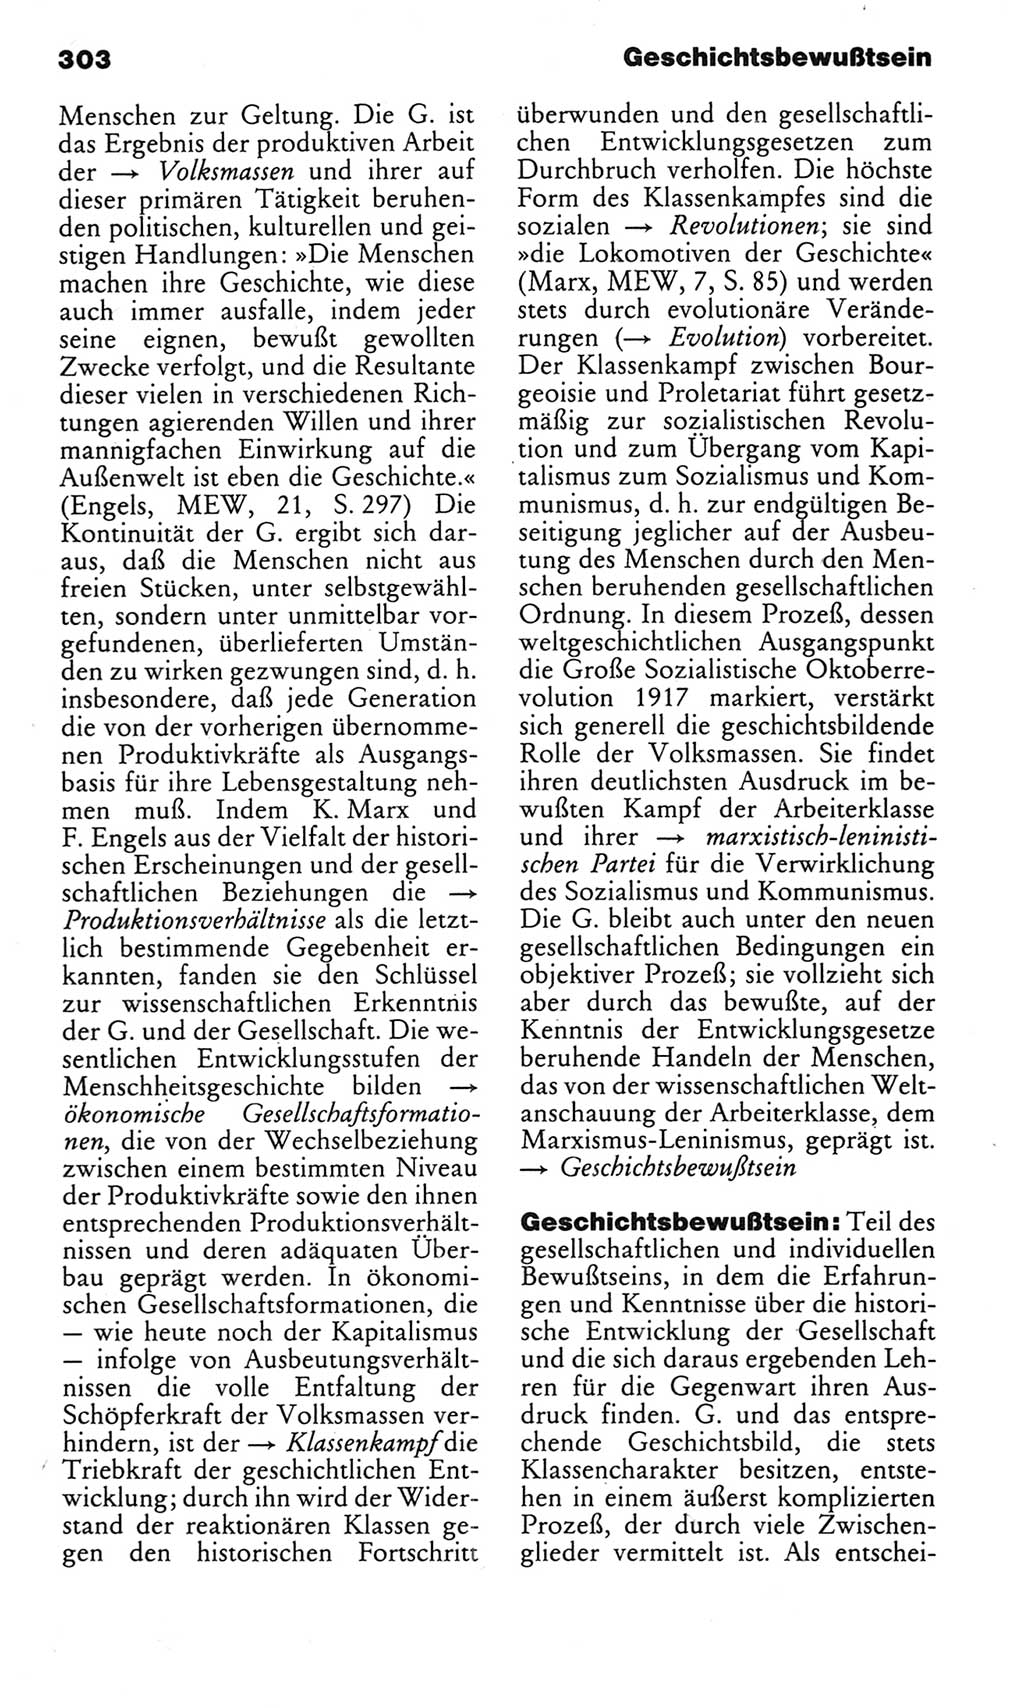 Kleines politisches Wörterbuch [Deutsche Demokratische Republik (DDR)] 1983, Seite 303 (Kl. pol. Wb. DDR 1983, S. 303)